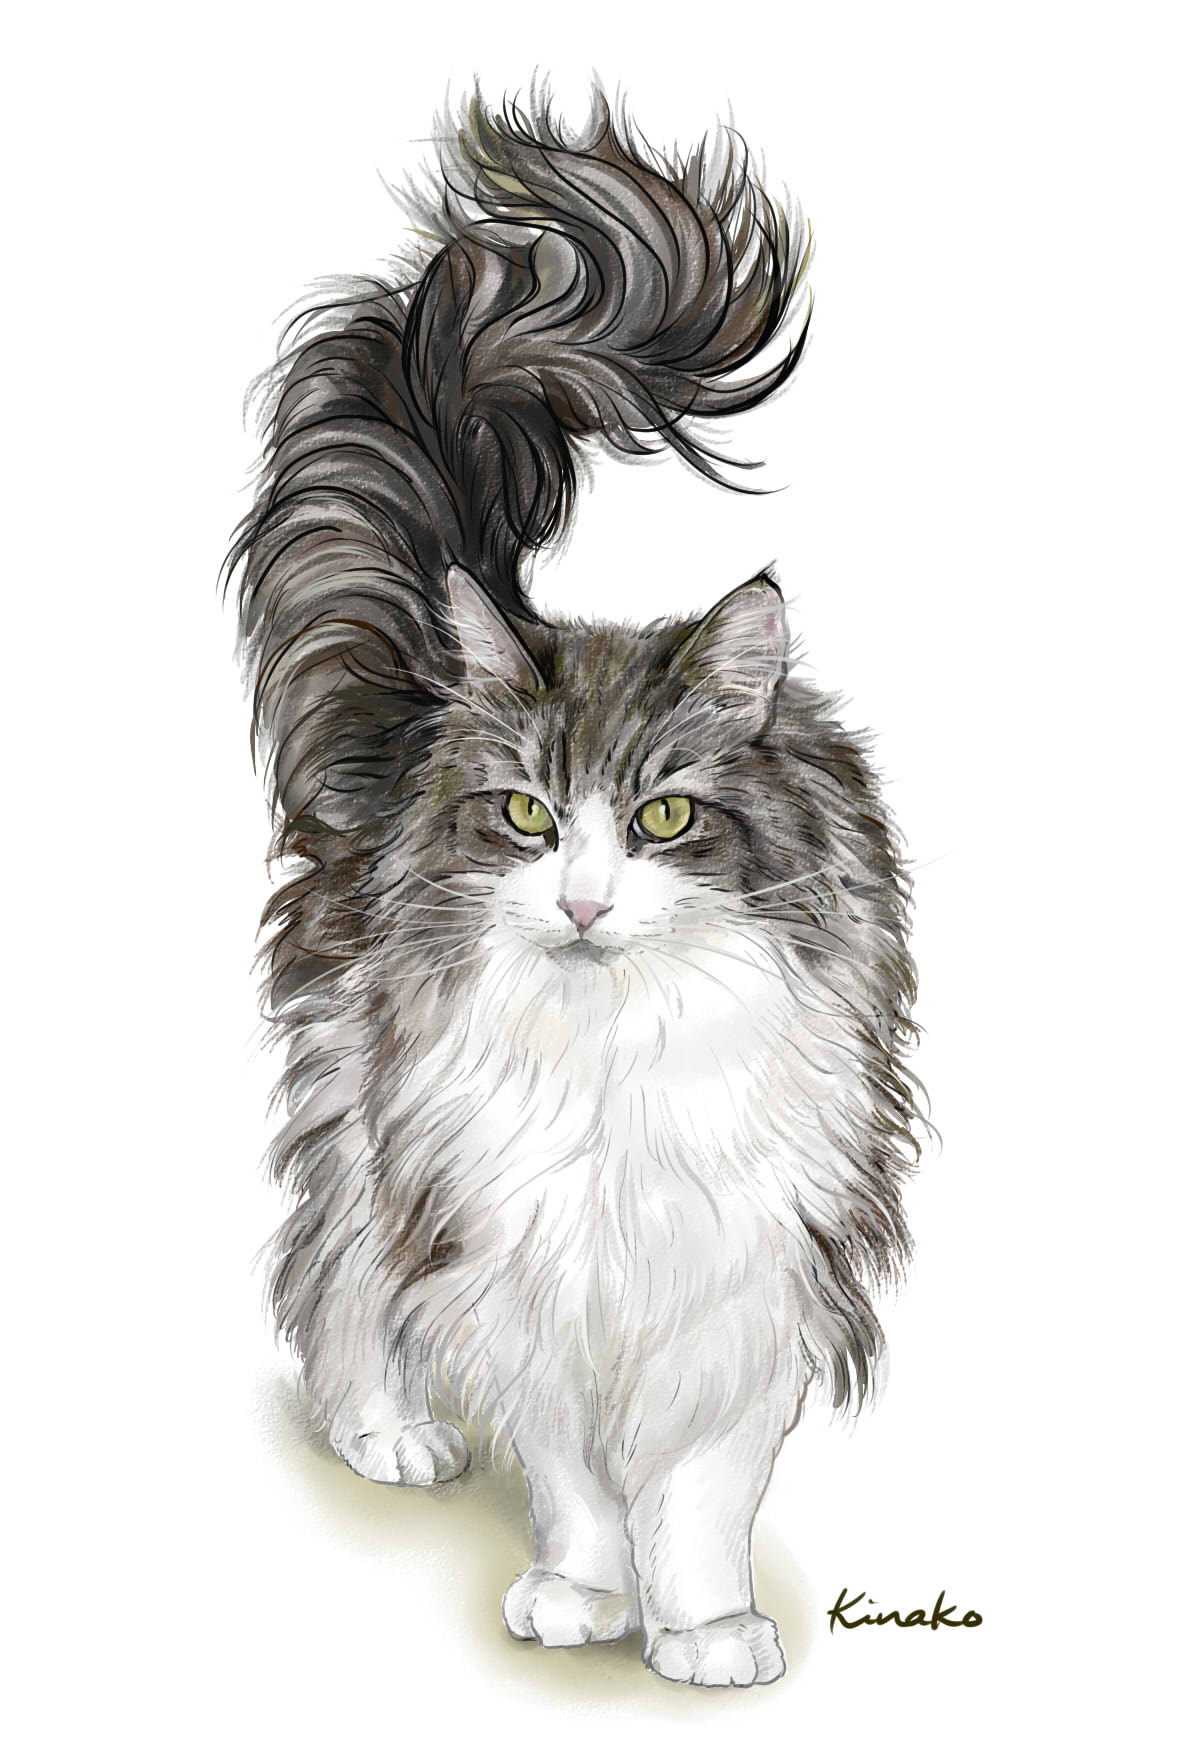 きなこ 猫の絵を描いています この立ち姿があまりにもカッコいいので 描かせていただきました このきりっとした表情 このふんわりと立ち上がるうねるようなしっぽの美しさ 見事です ノルにゃんこさんのフクちゃんです 猫絵 Cat Drawing 猫